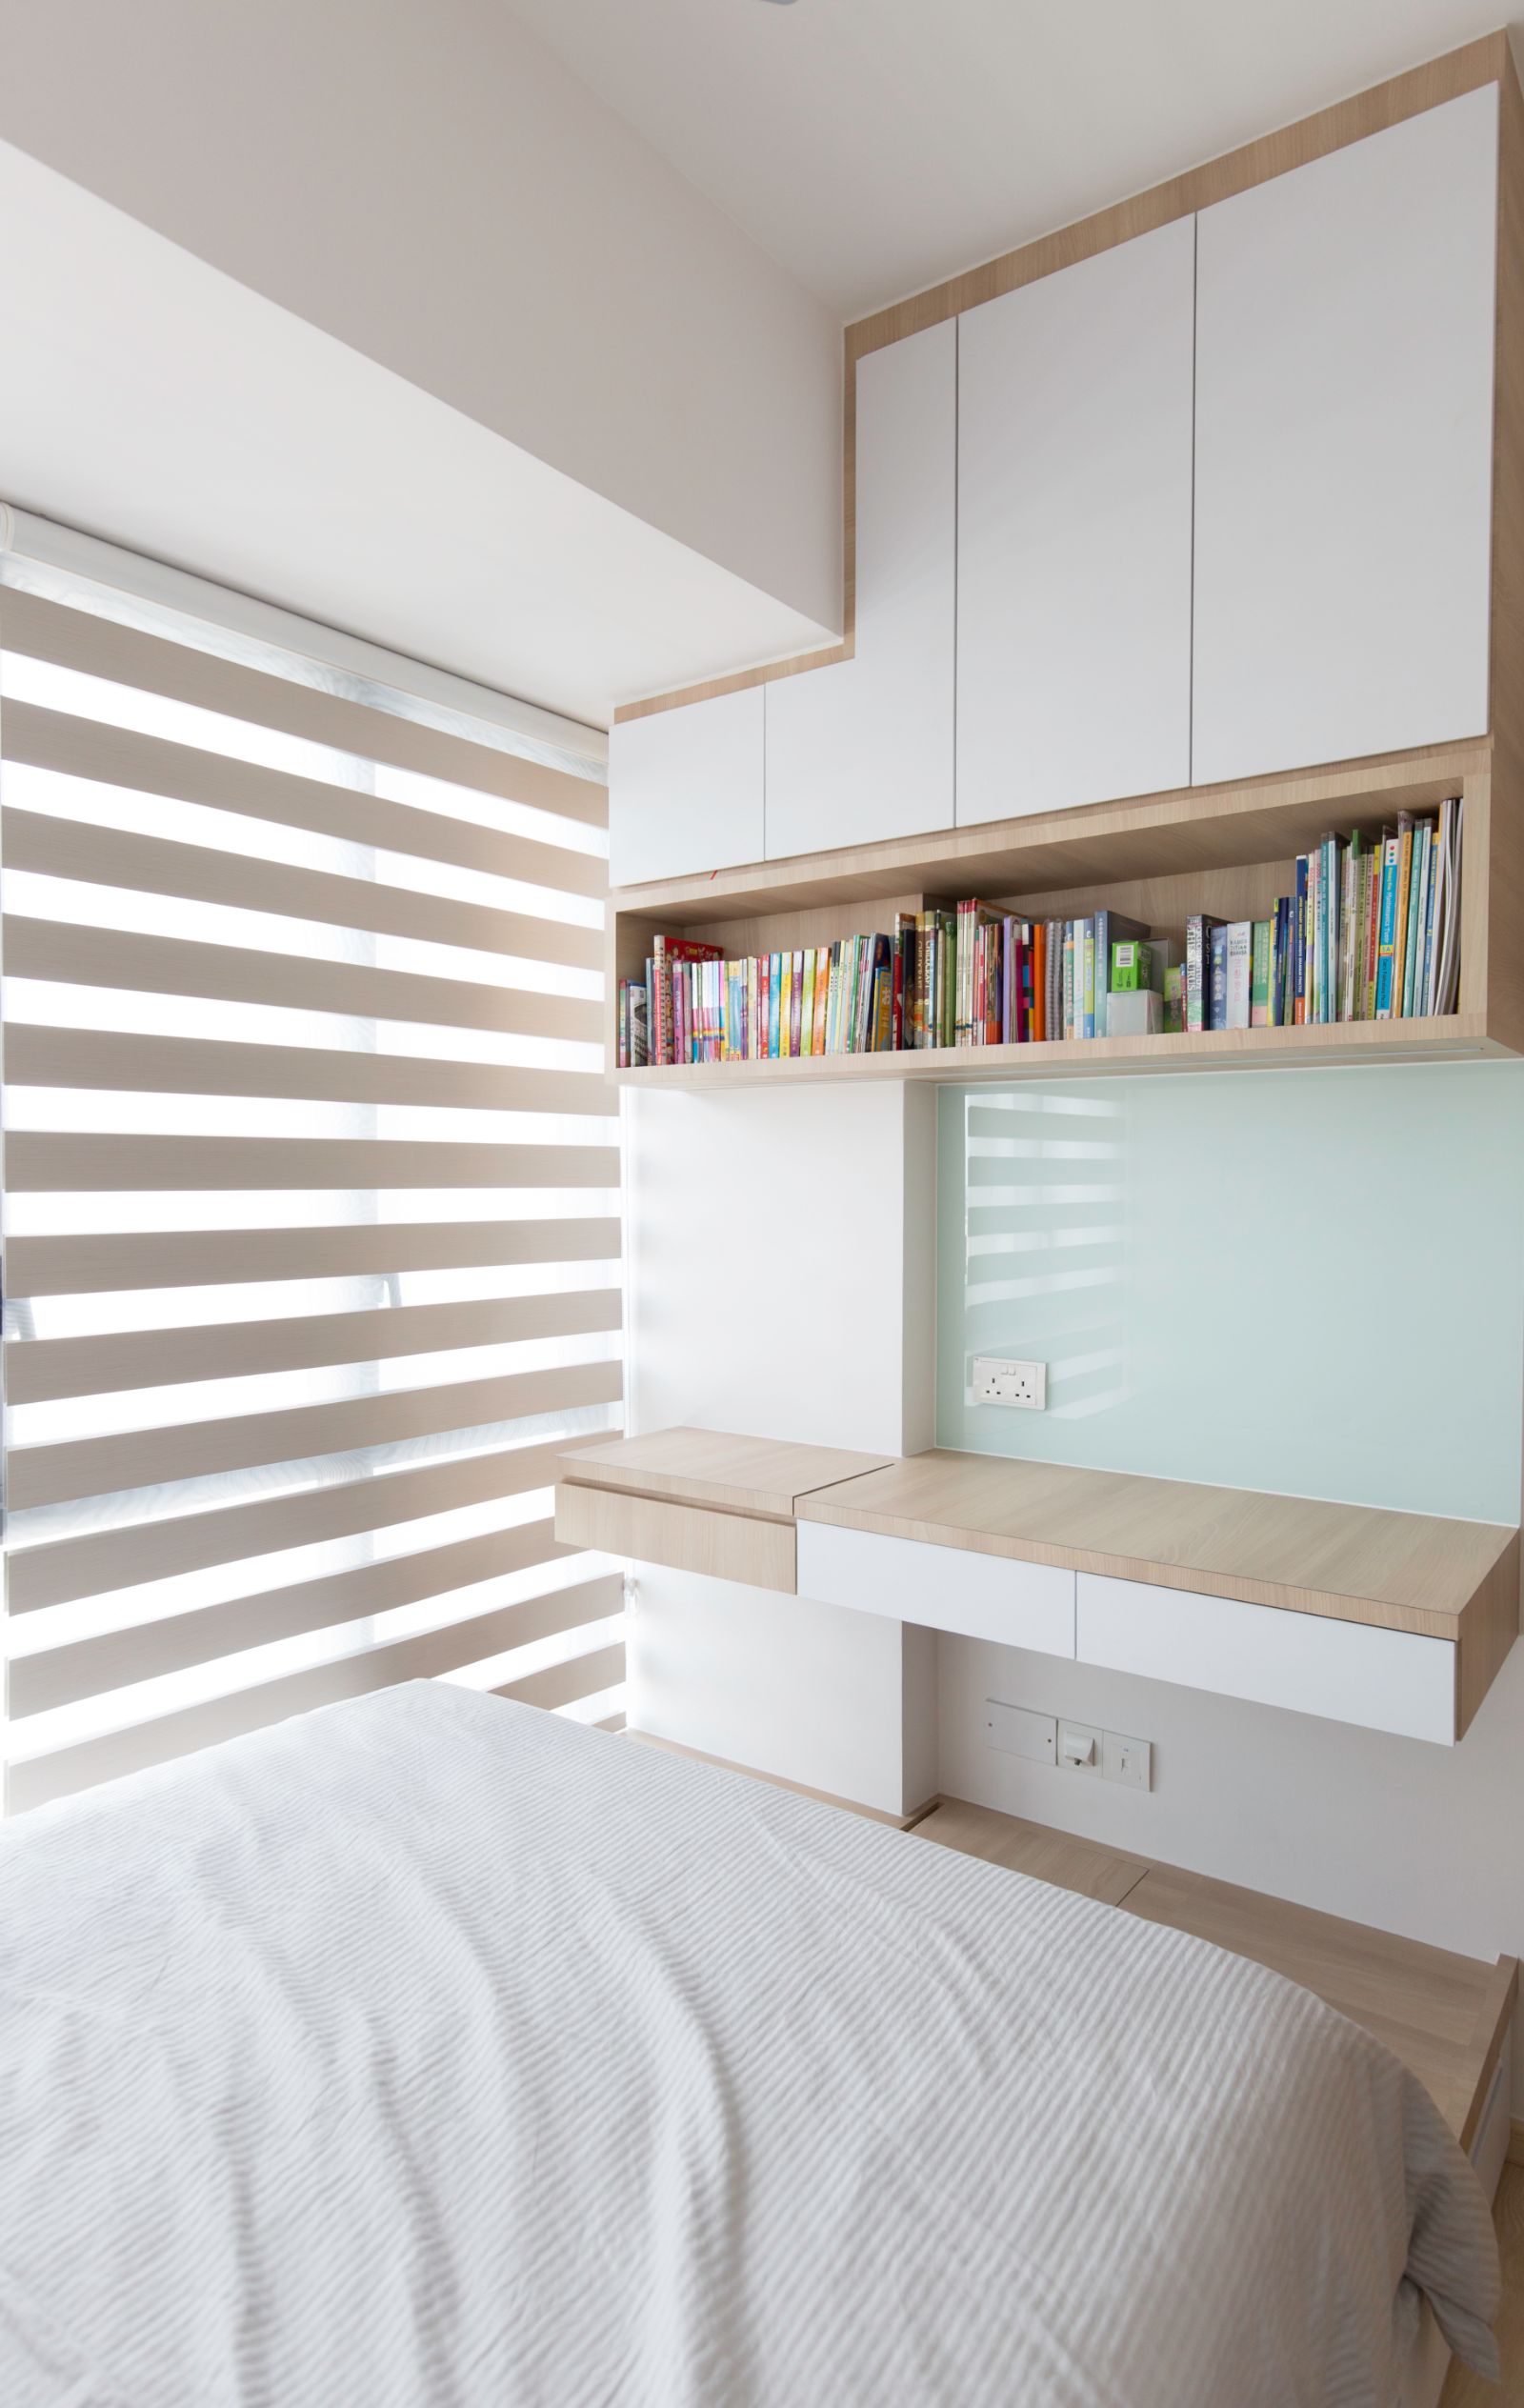 Eclectic, Modern, Scandinavian Design - Bedroom - Condominium - Design by Carpenters 匠